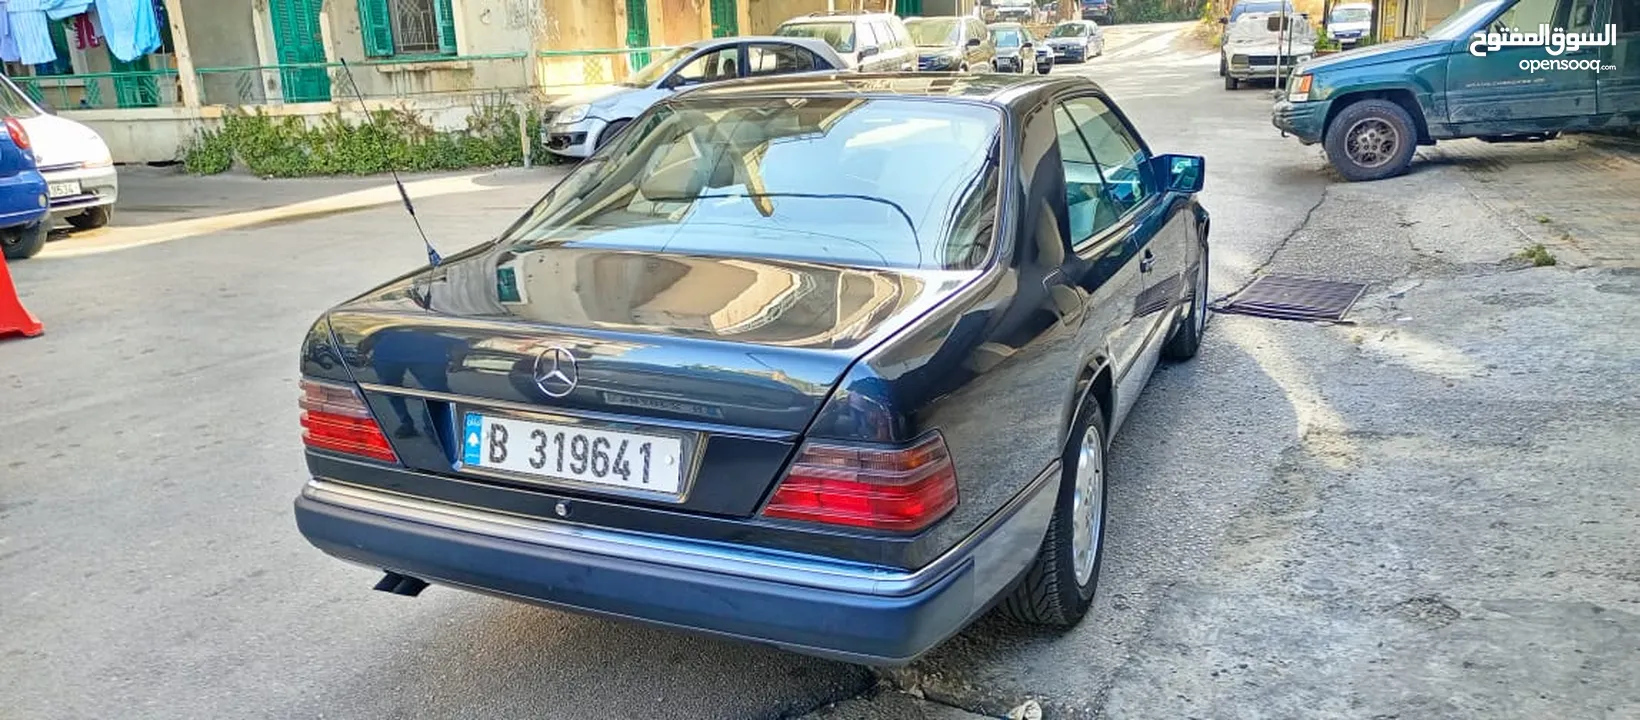 مرسيدسCE 300 مودال 1990مفوله  بعدا شركه Mercedes